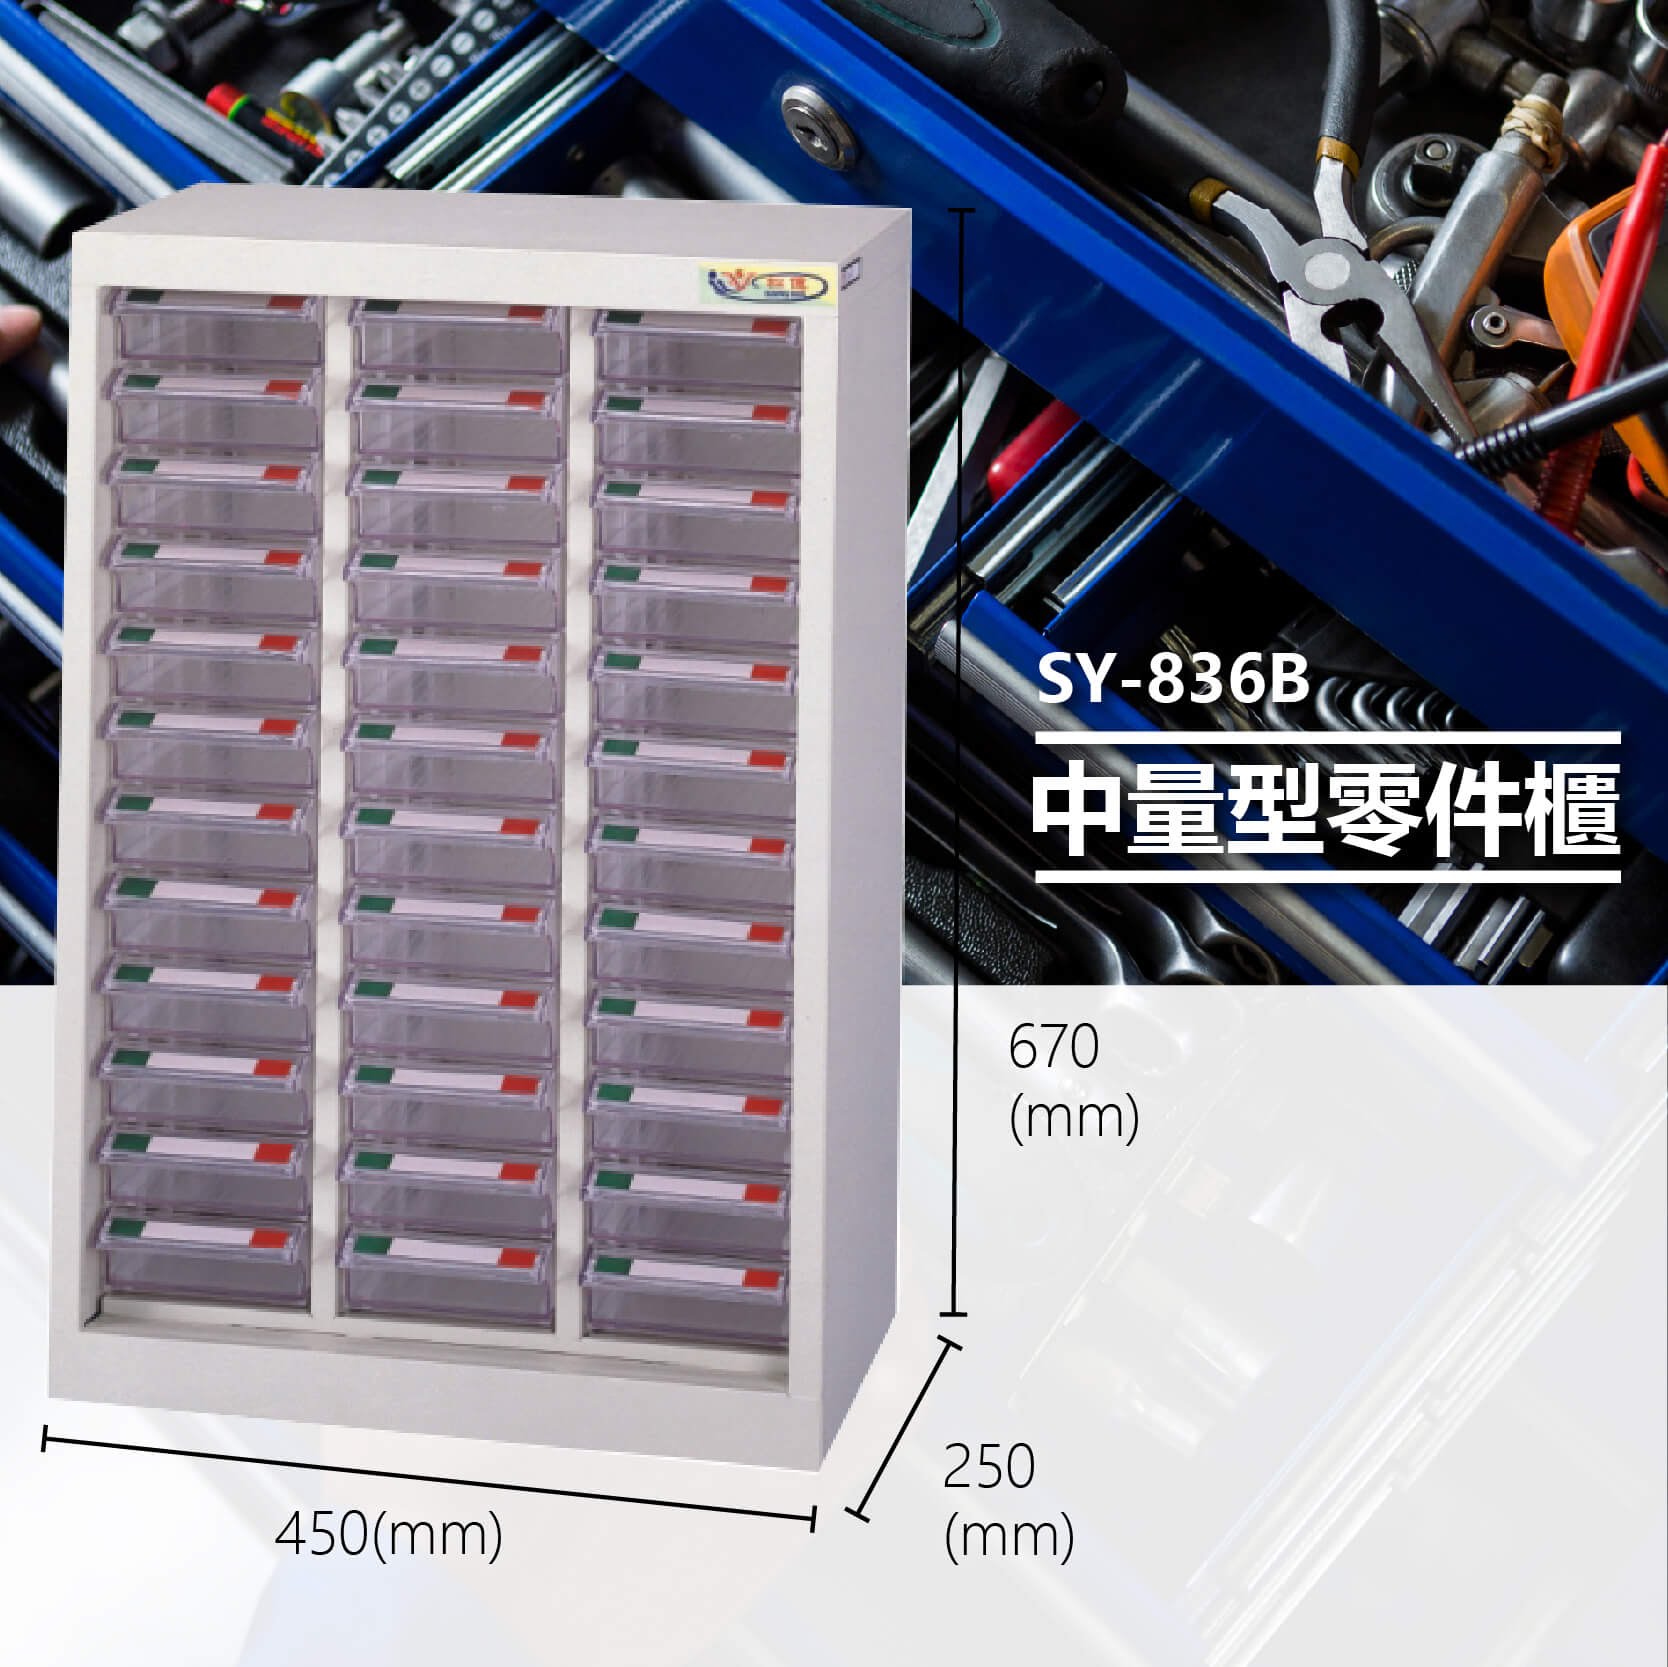 官方推薦【大富】SY-836B 中量型零件櫃 收納櫃 零件盒 置物櫃 分類盒 分類櫃 工具櫃 台灣製造